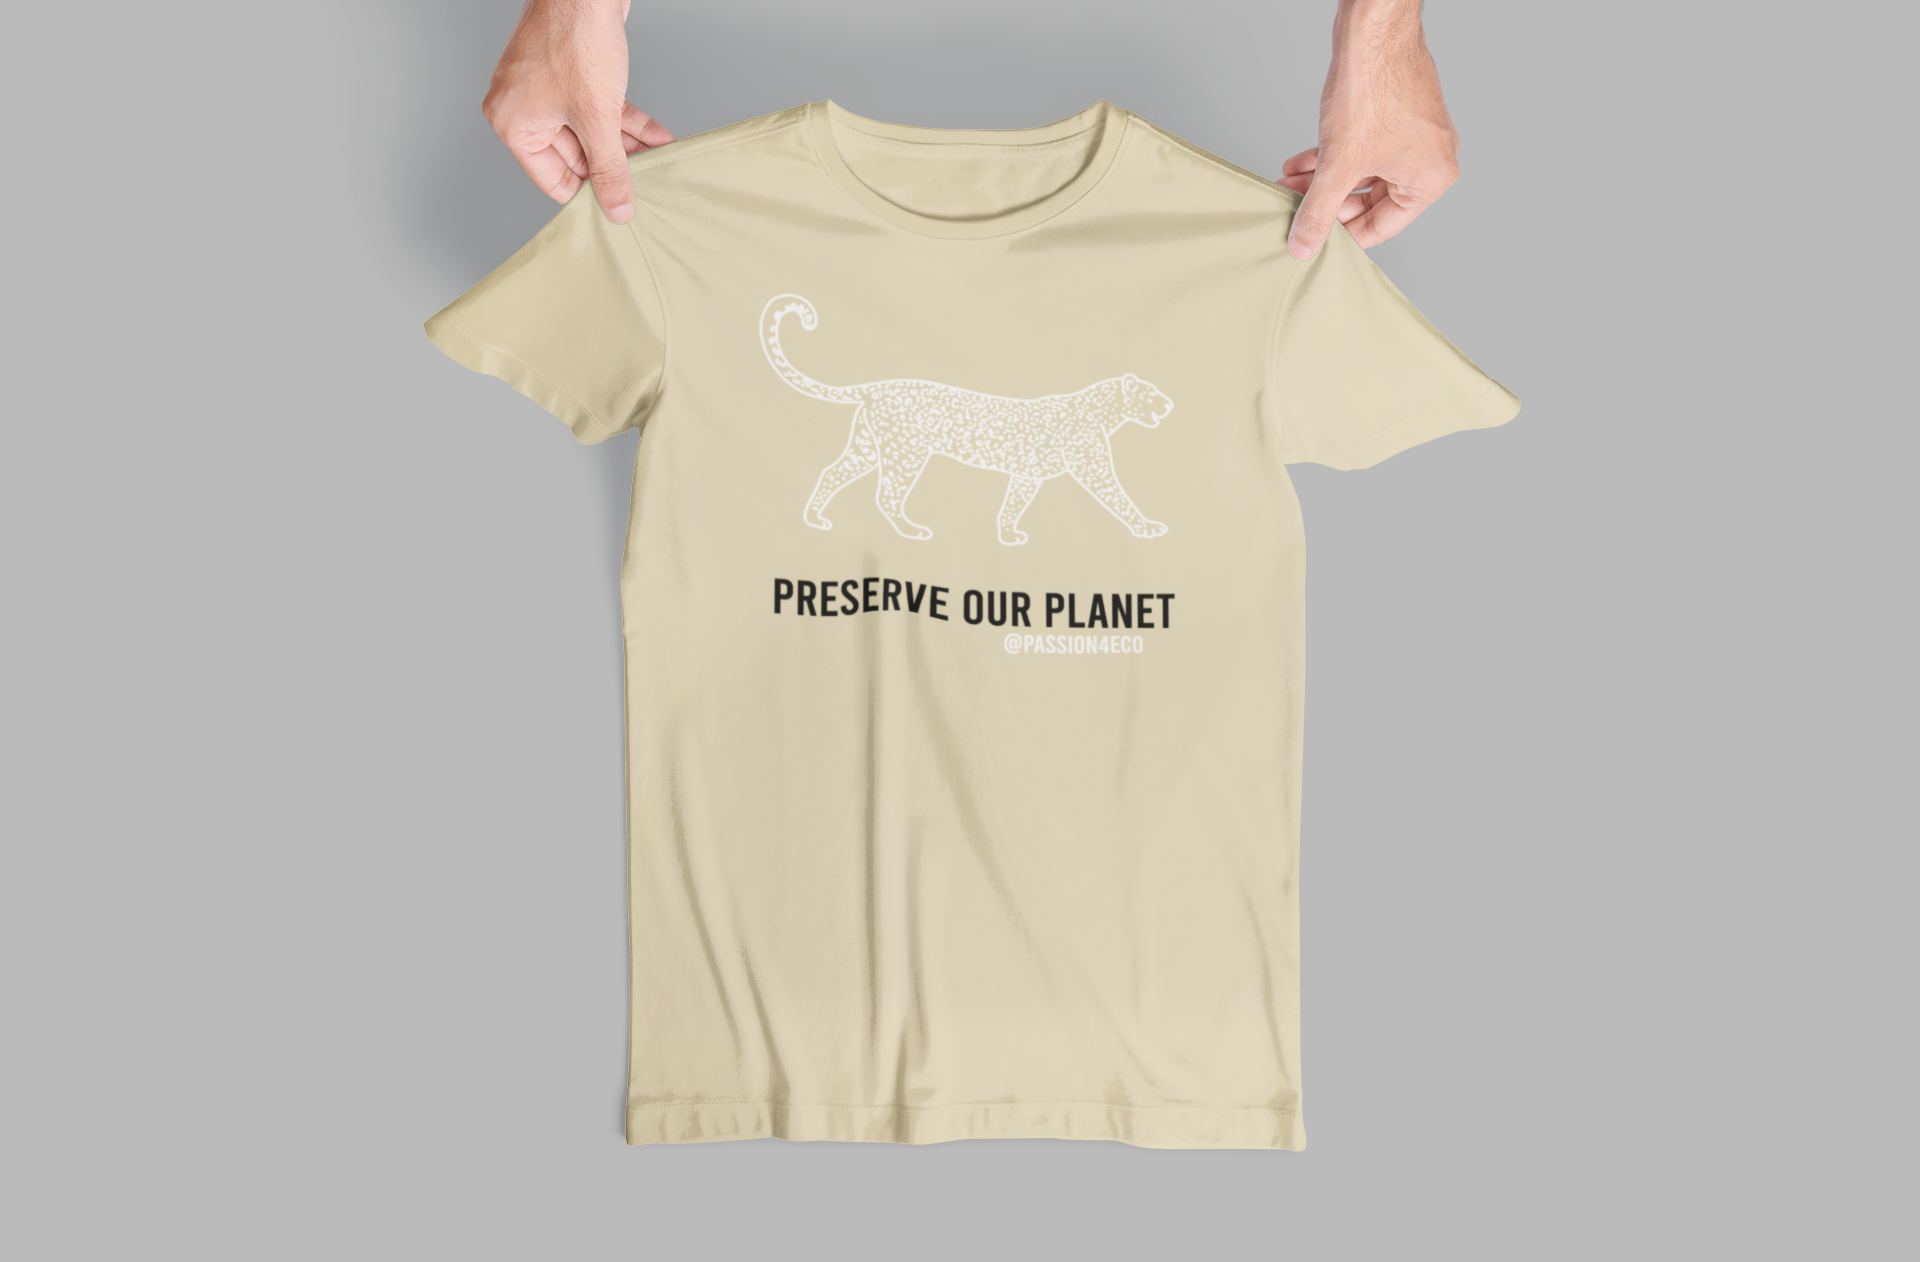 "Preserve Our Planet" Jaguar Graphic Tee